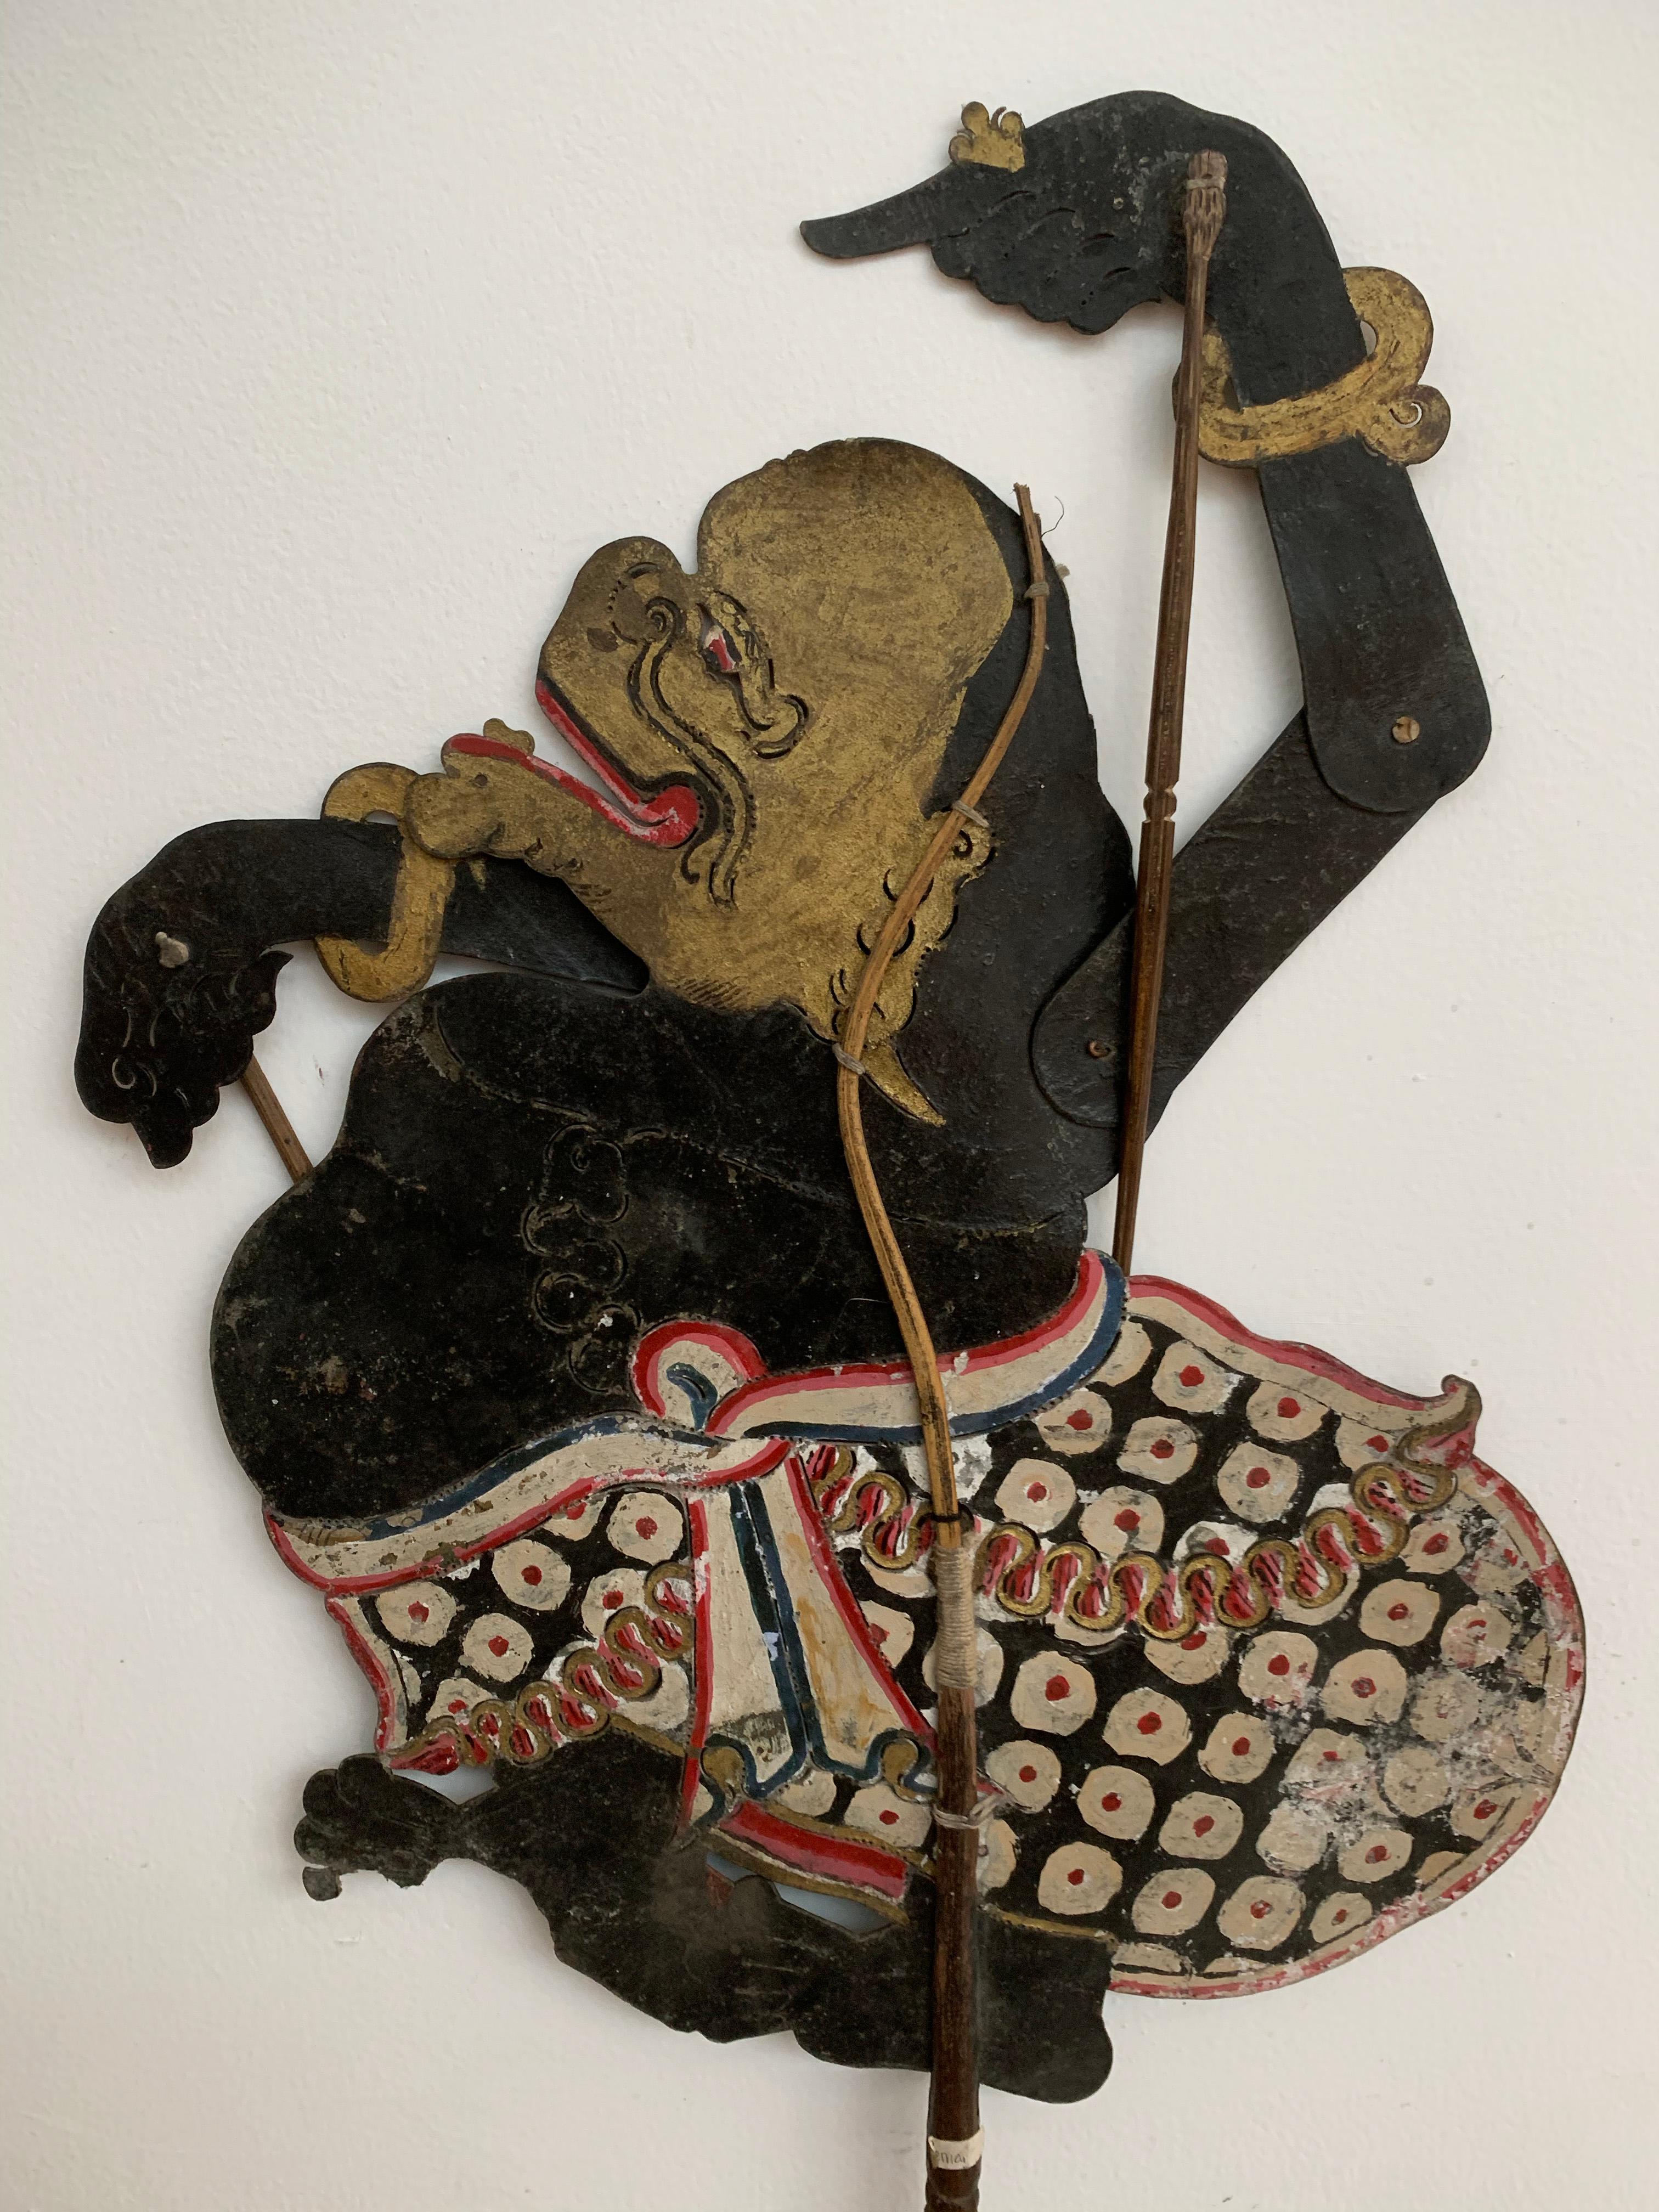 Diese flache Schattenpuppe wurde auf der Insel Java von einem Puppenspieler aus Büffelleder gefertigt und auf Bambusstöcke montiert. Sie verfügt über bewegliche Arme, die durch äußere Bambusstäbe gesteuert werden. Sie wurde in Wayang-Puppenspielen